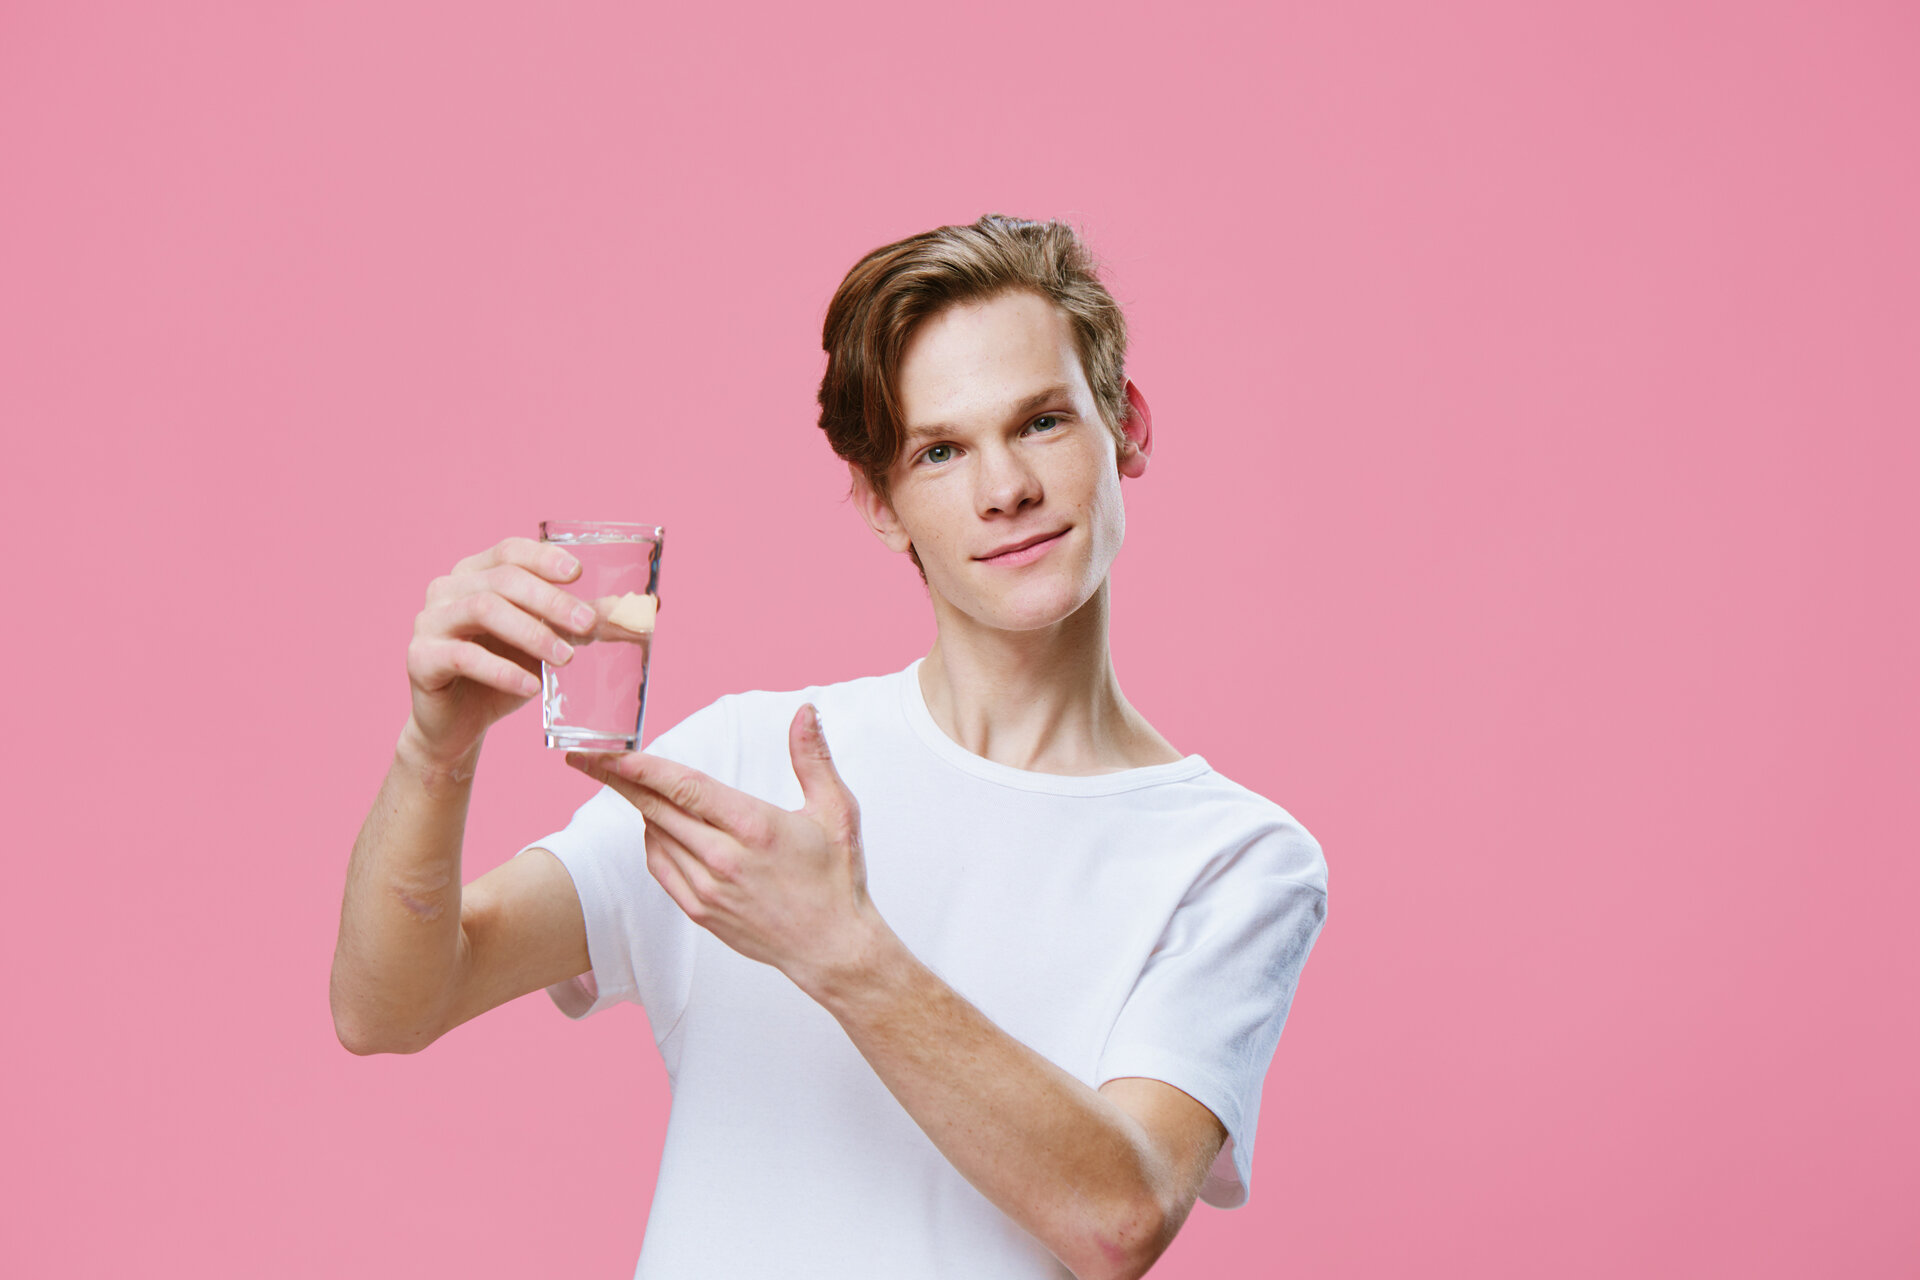 Ein sympathischer Typ in einem weißen T-Shirt zeigt auf ein Glas Wasser in seiner Hand.